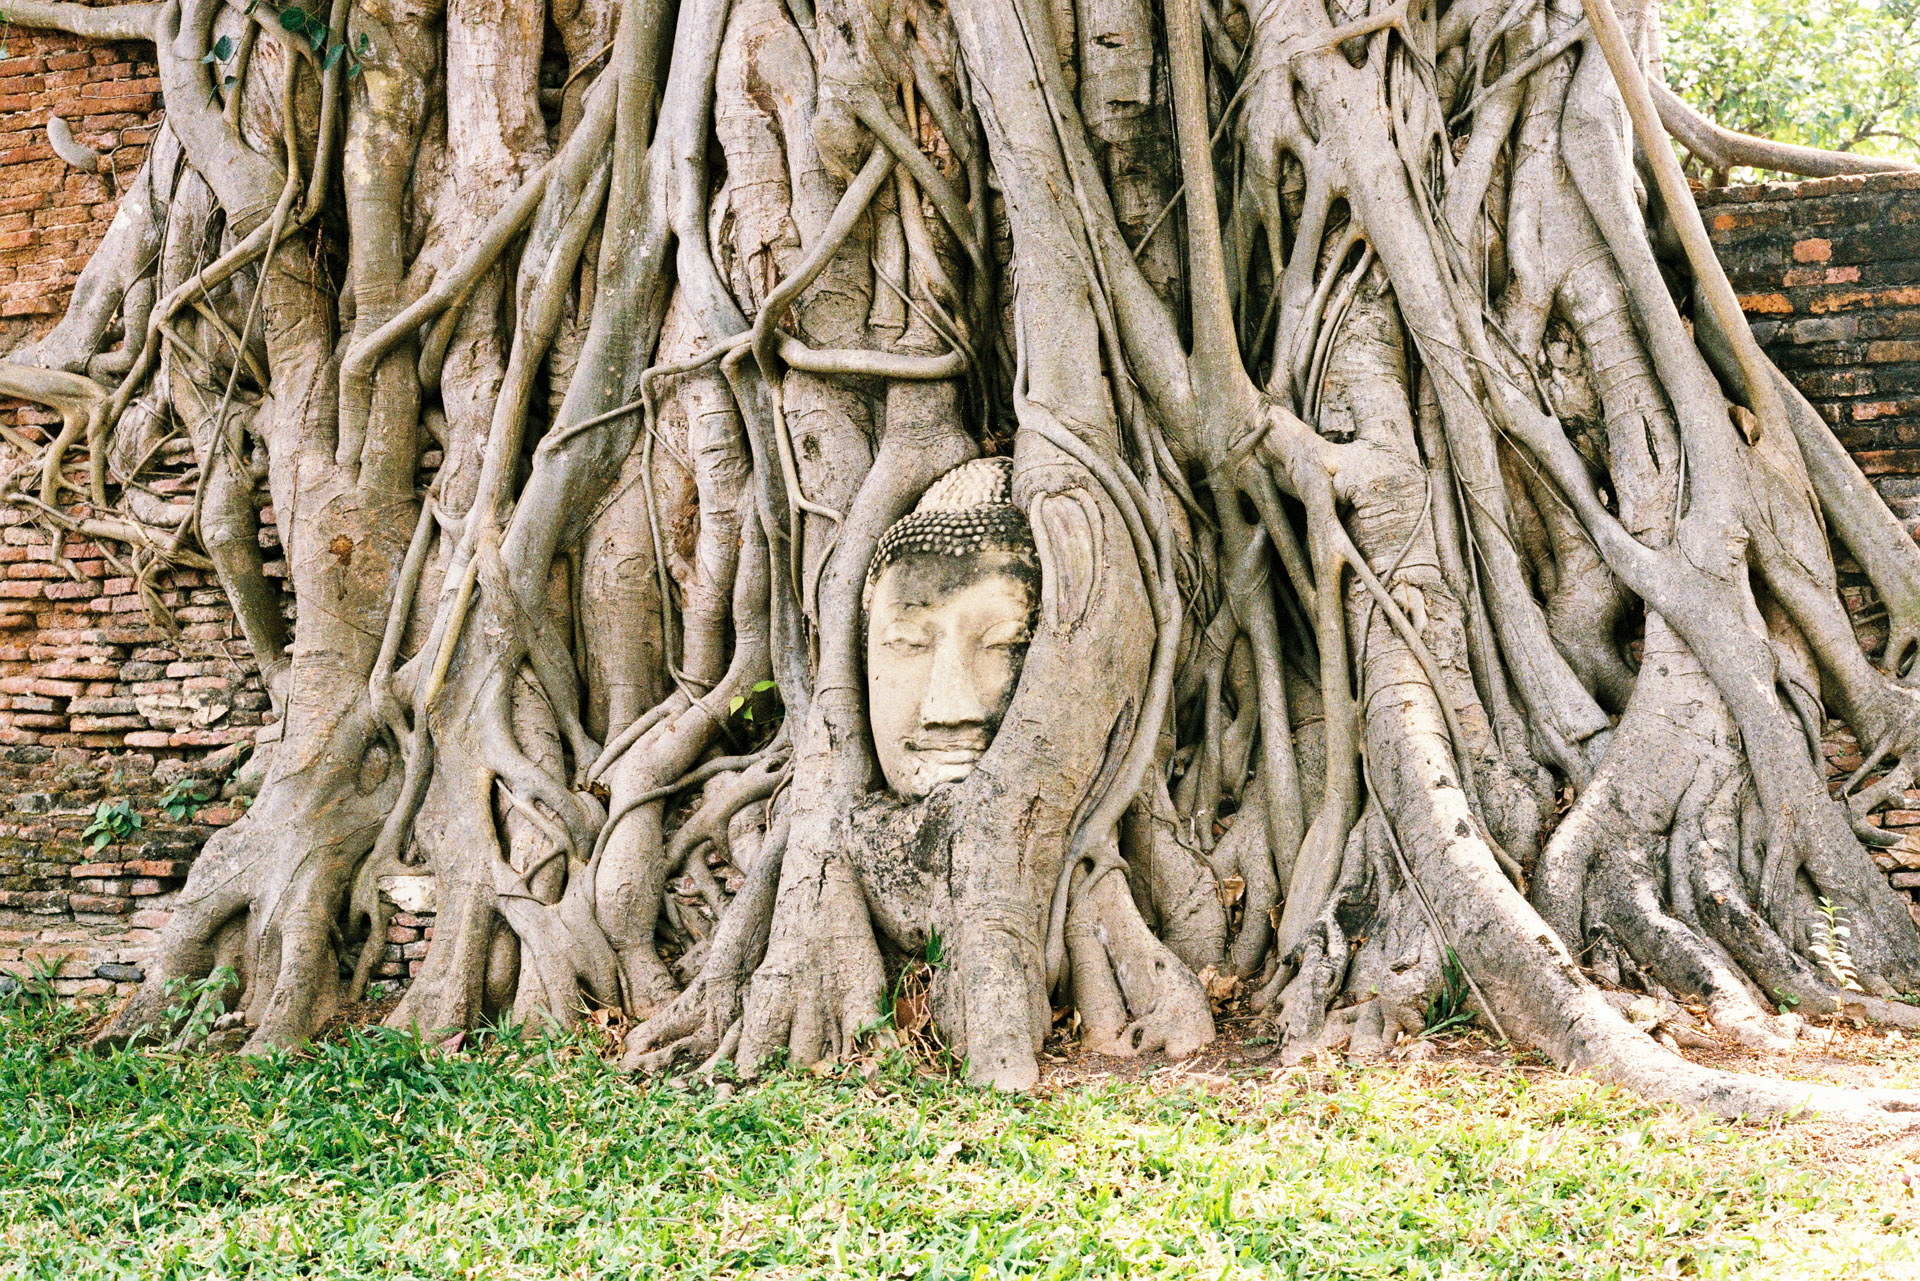 Ayutthaya Buddha Head Statue Tree Root Fuji S400